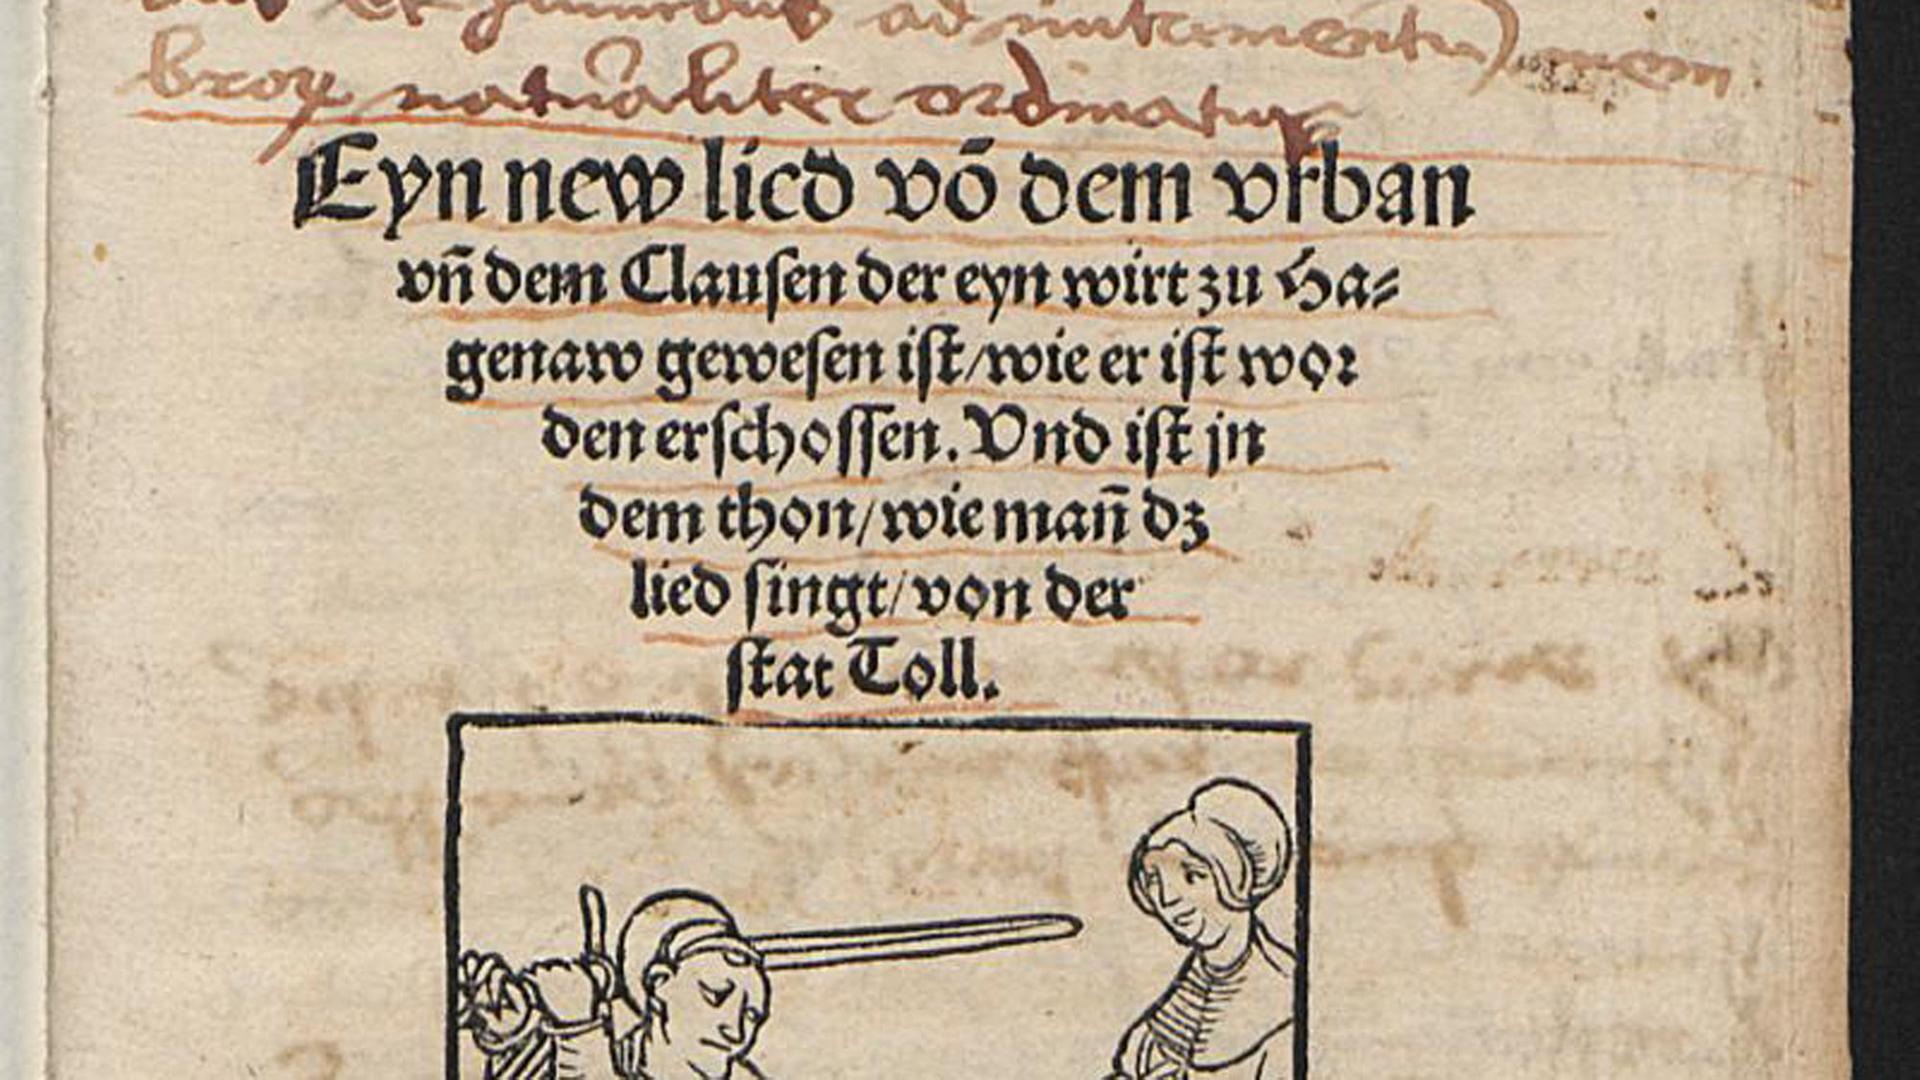 Druck des Liedes "Eyn new lied võ dem vrban ..." / "Ein neues Lied von dem Urban ..." aus dem Jahr 1520